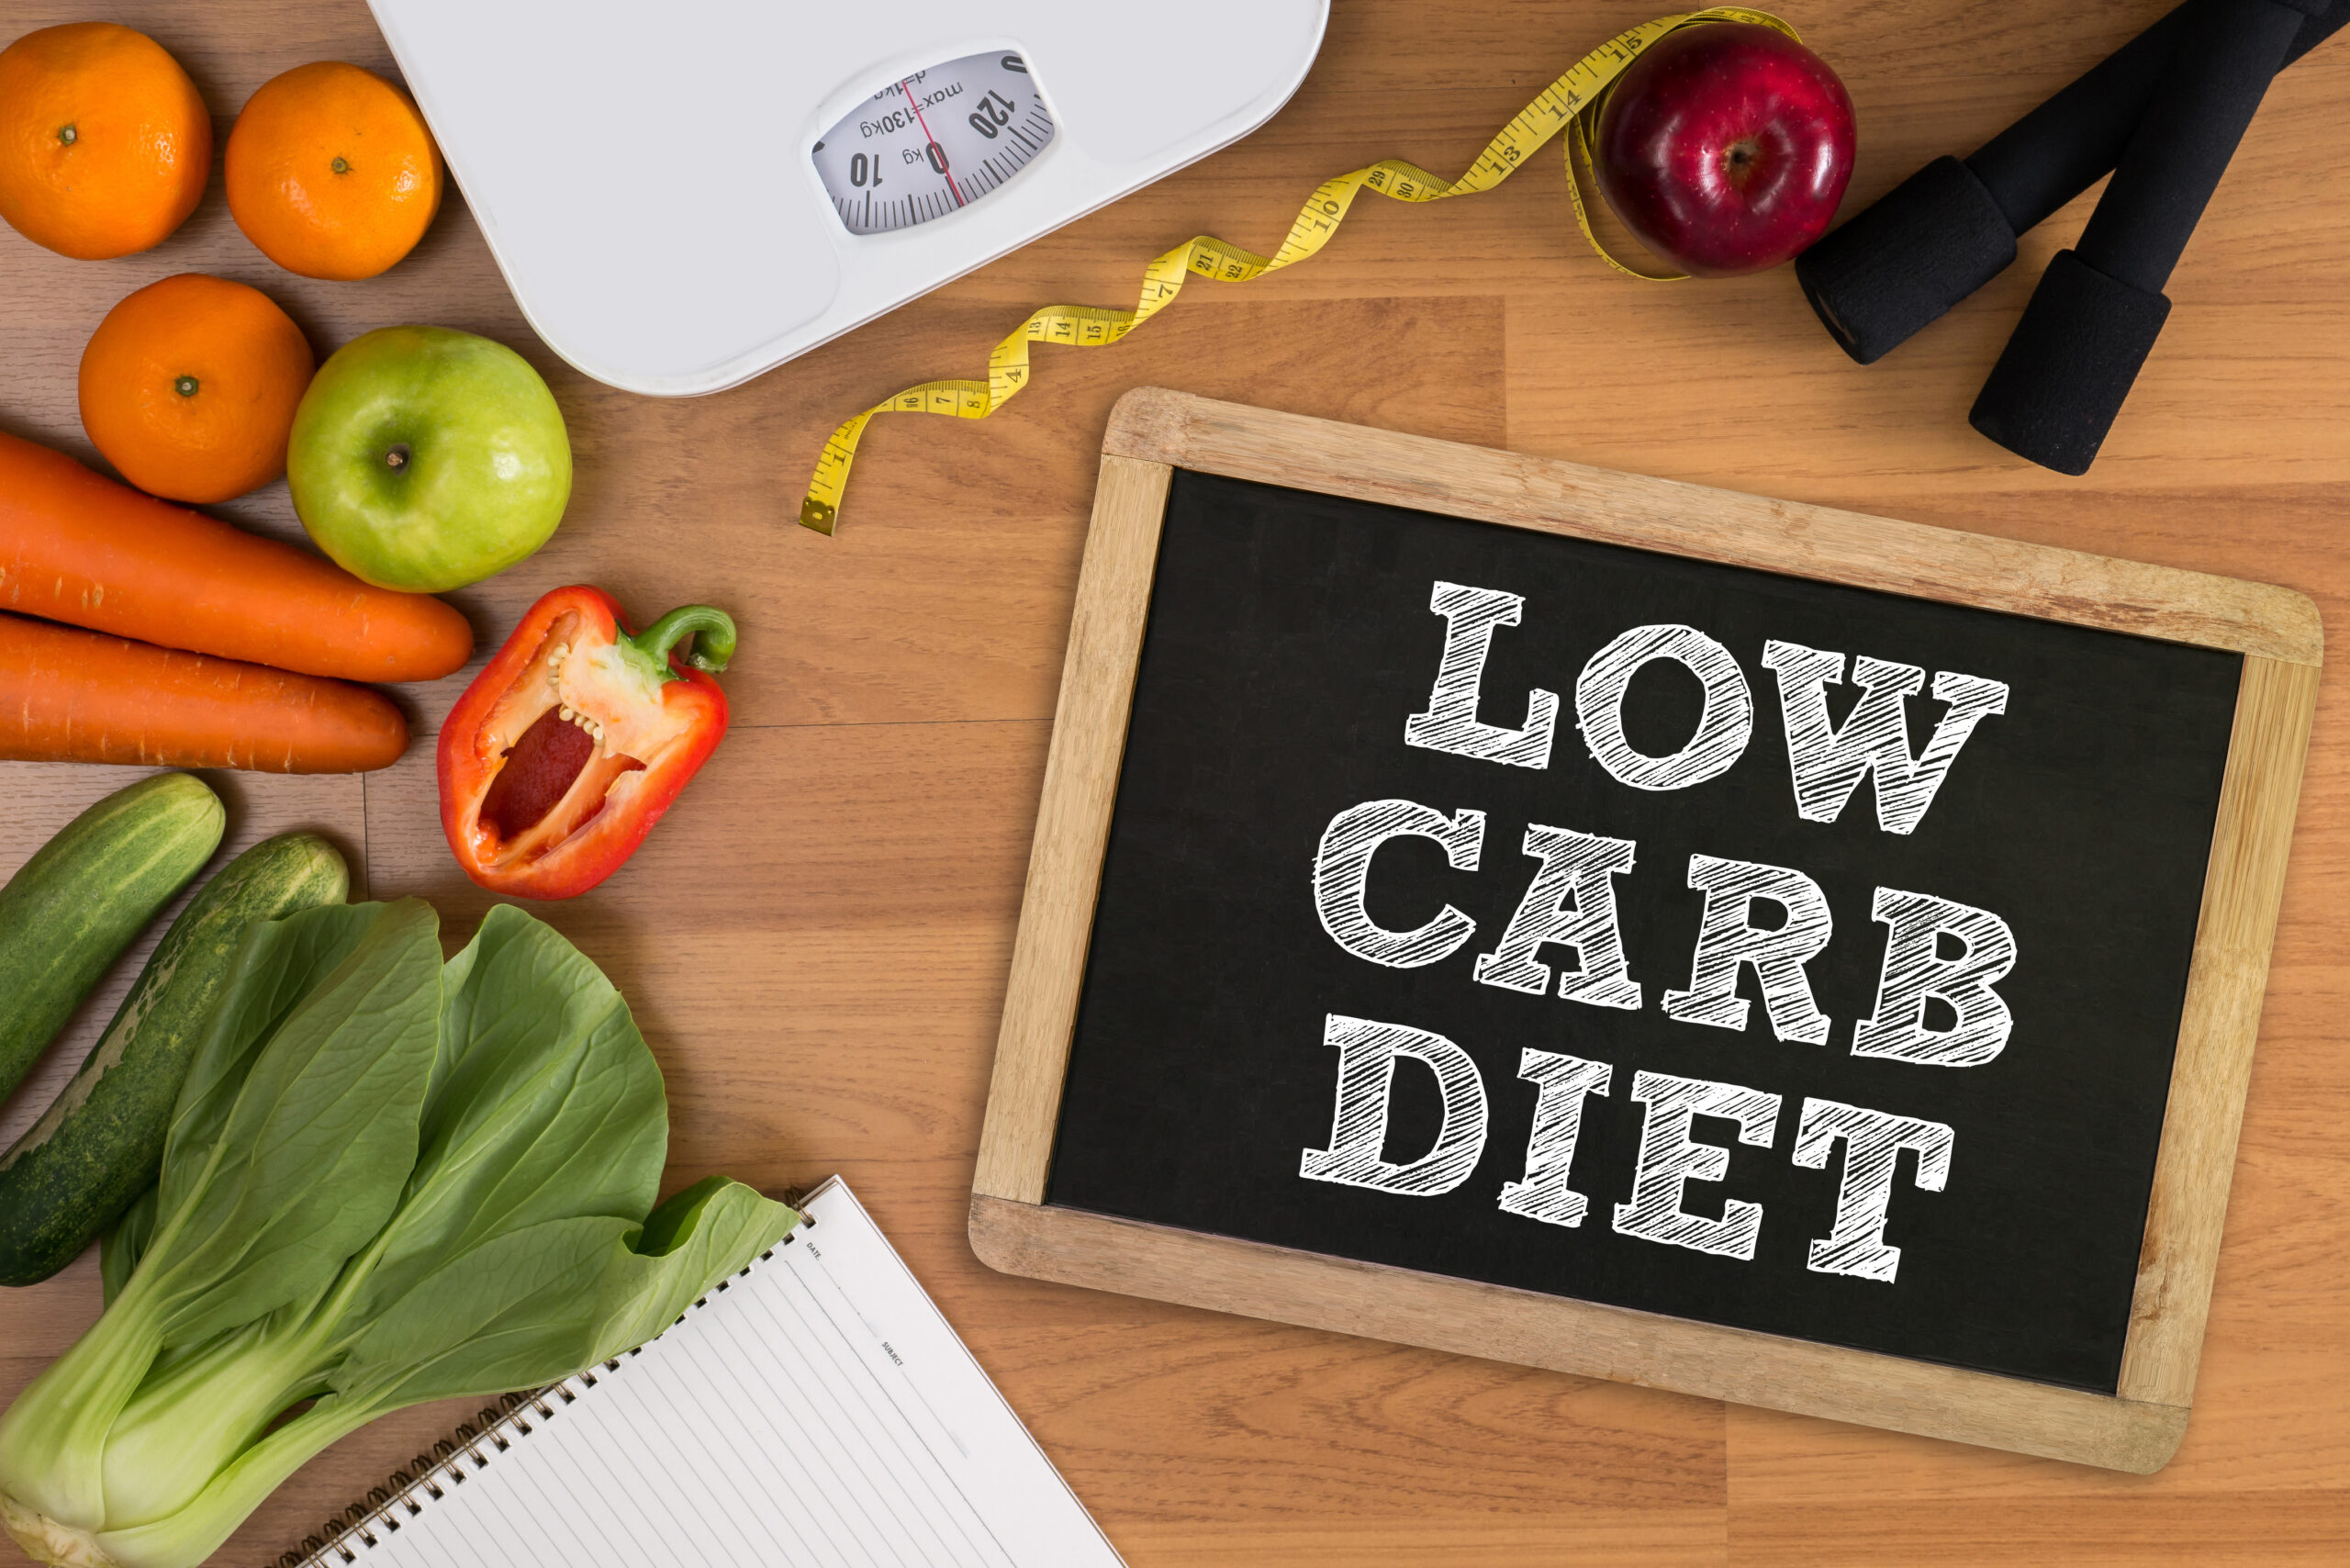 Alimentația sănătoasă - dieta low carb